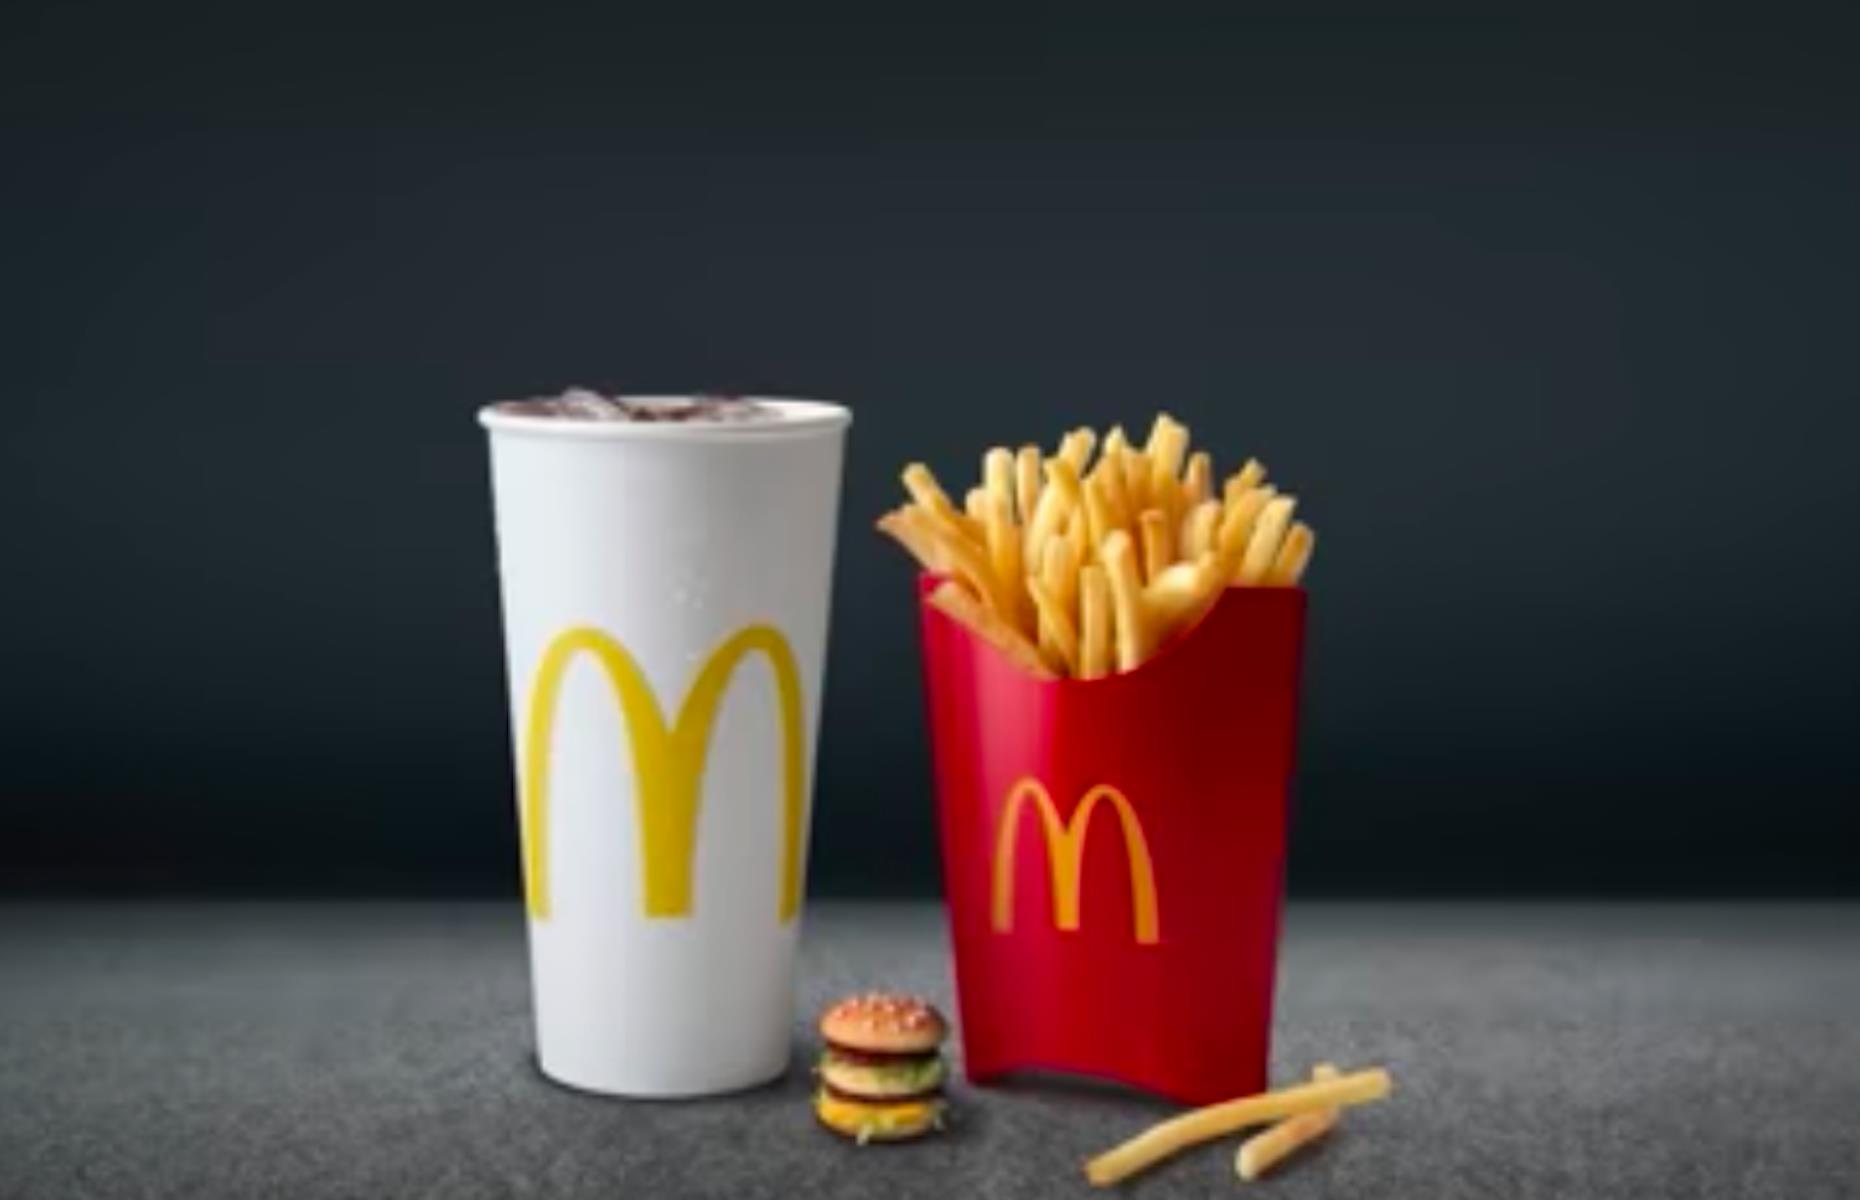 McDonald's introduces the Micro Mac